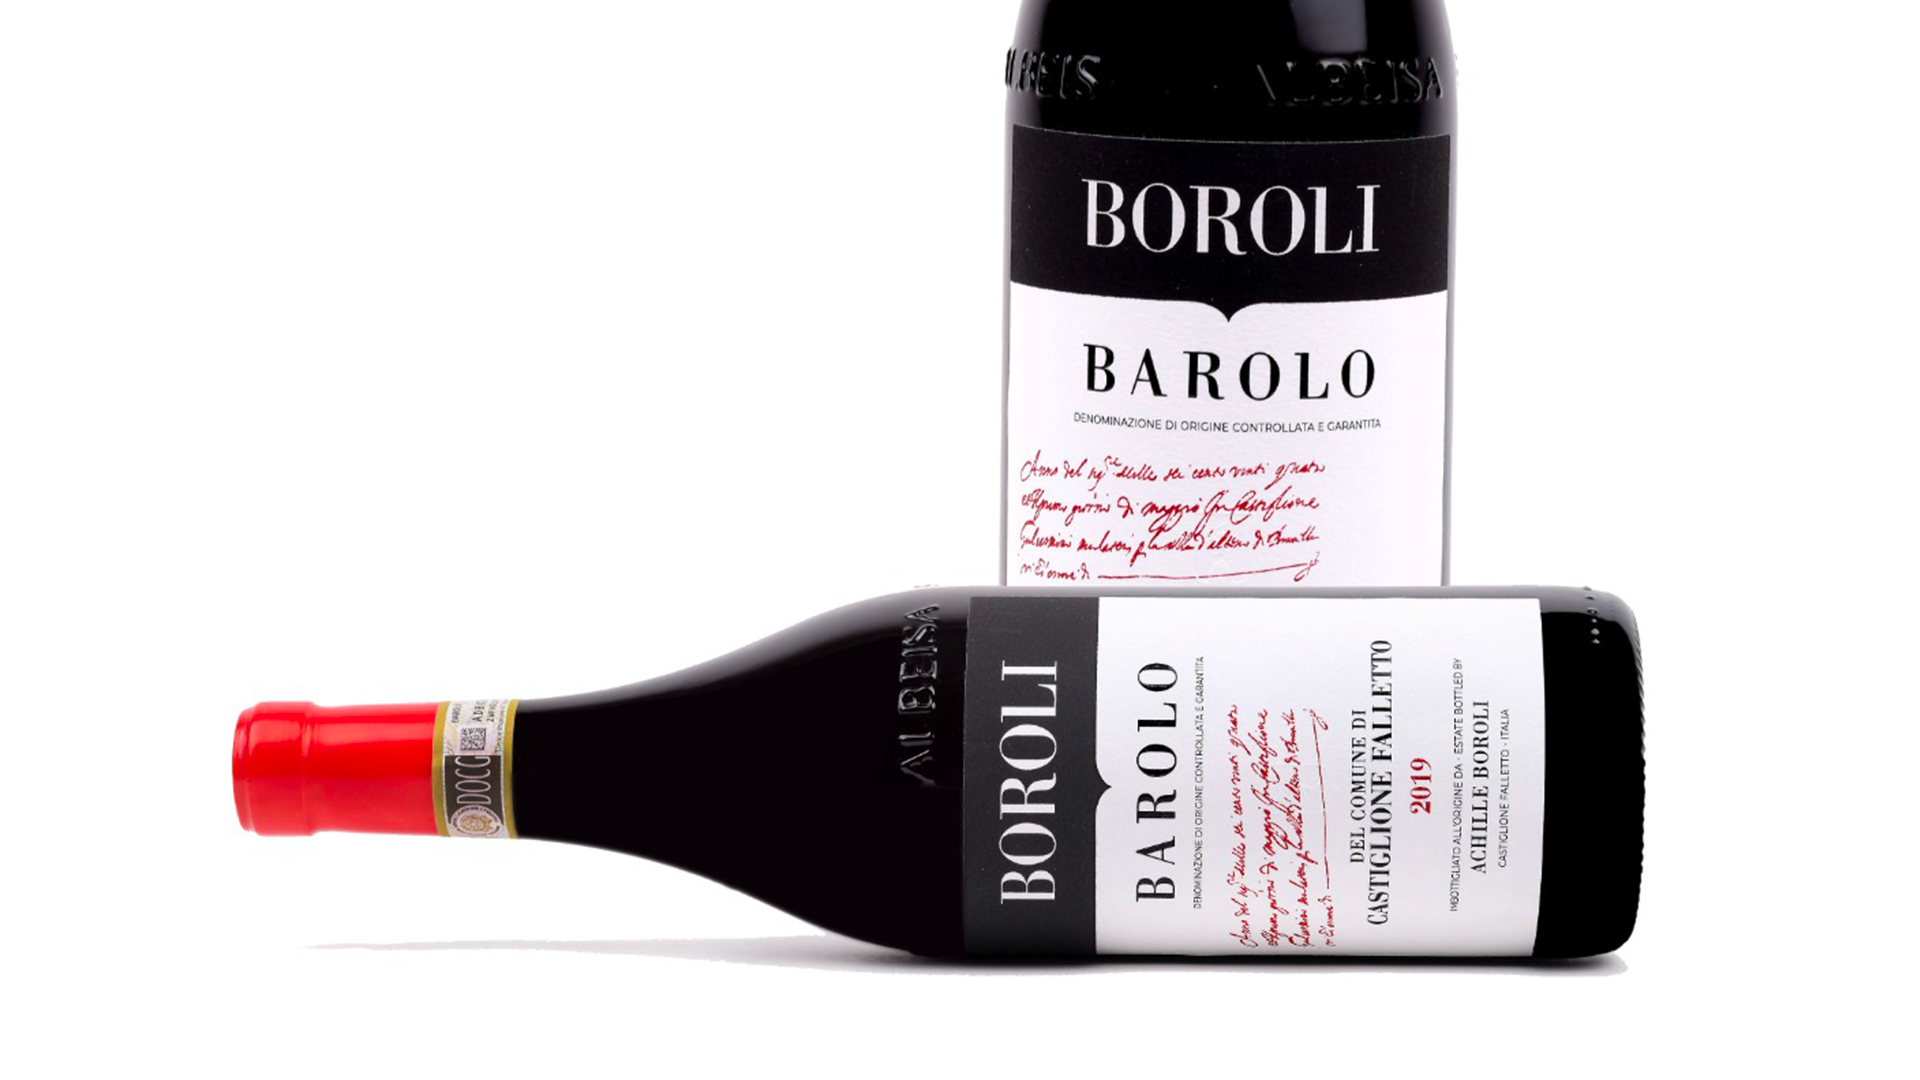 Bottle of red wine Barolo Boroli